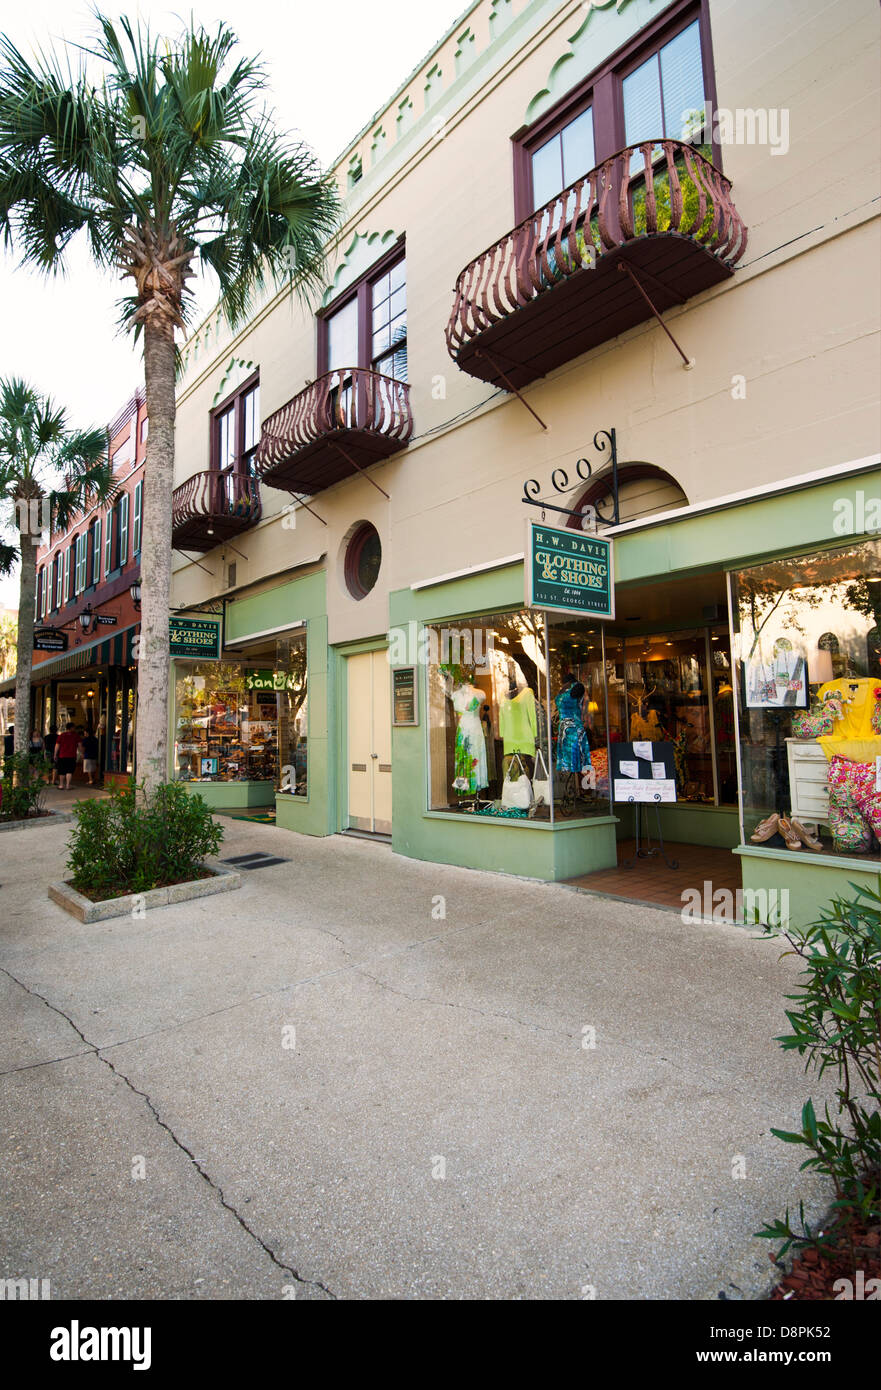 H.W. Les vêtements et chaussures Davis,152 St George St, St Augustine, Floride Banque D'Images